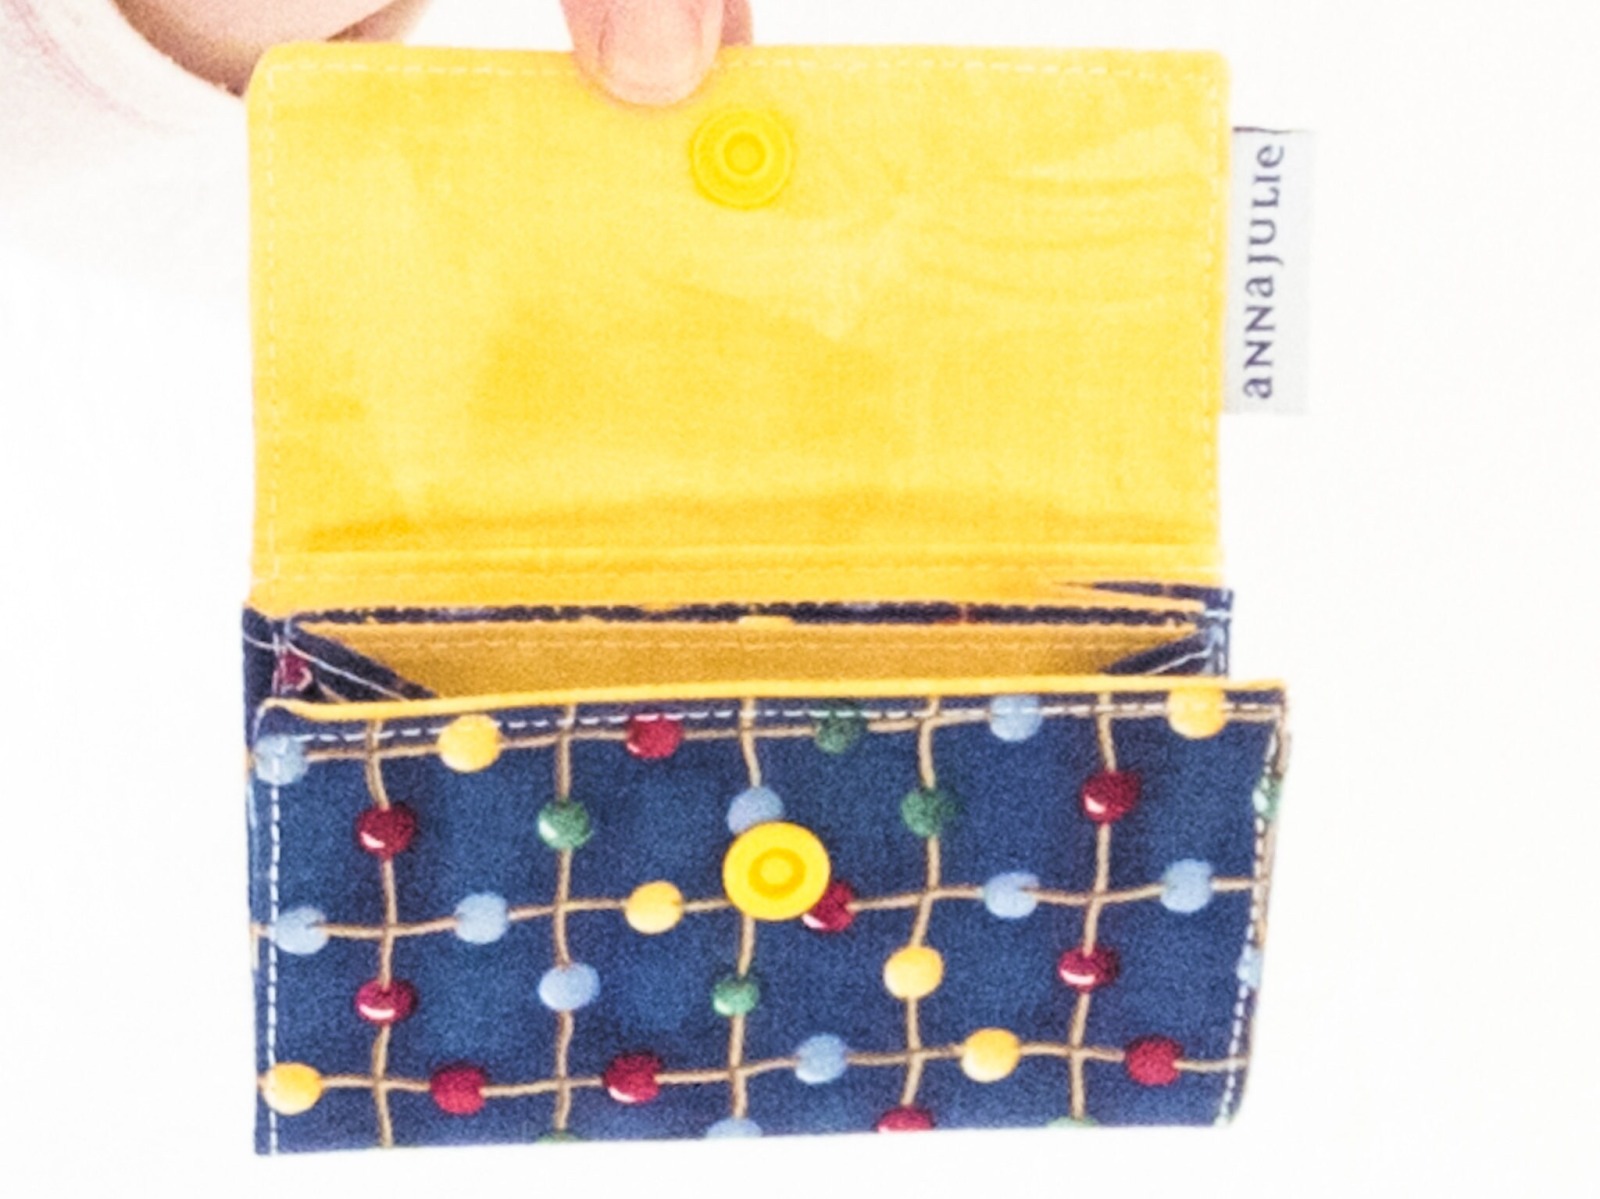 Geldbörse | mini | blaue Baumwolle | bunte Punkte | innen gelb und blau | Geschenk Einschulung 4